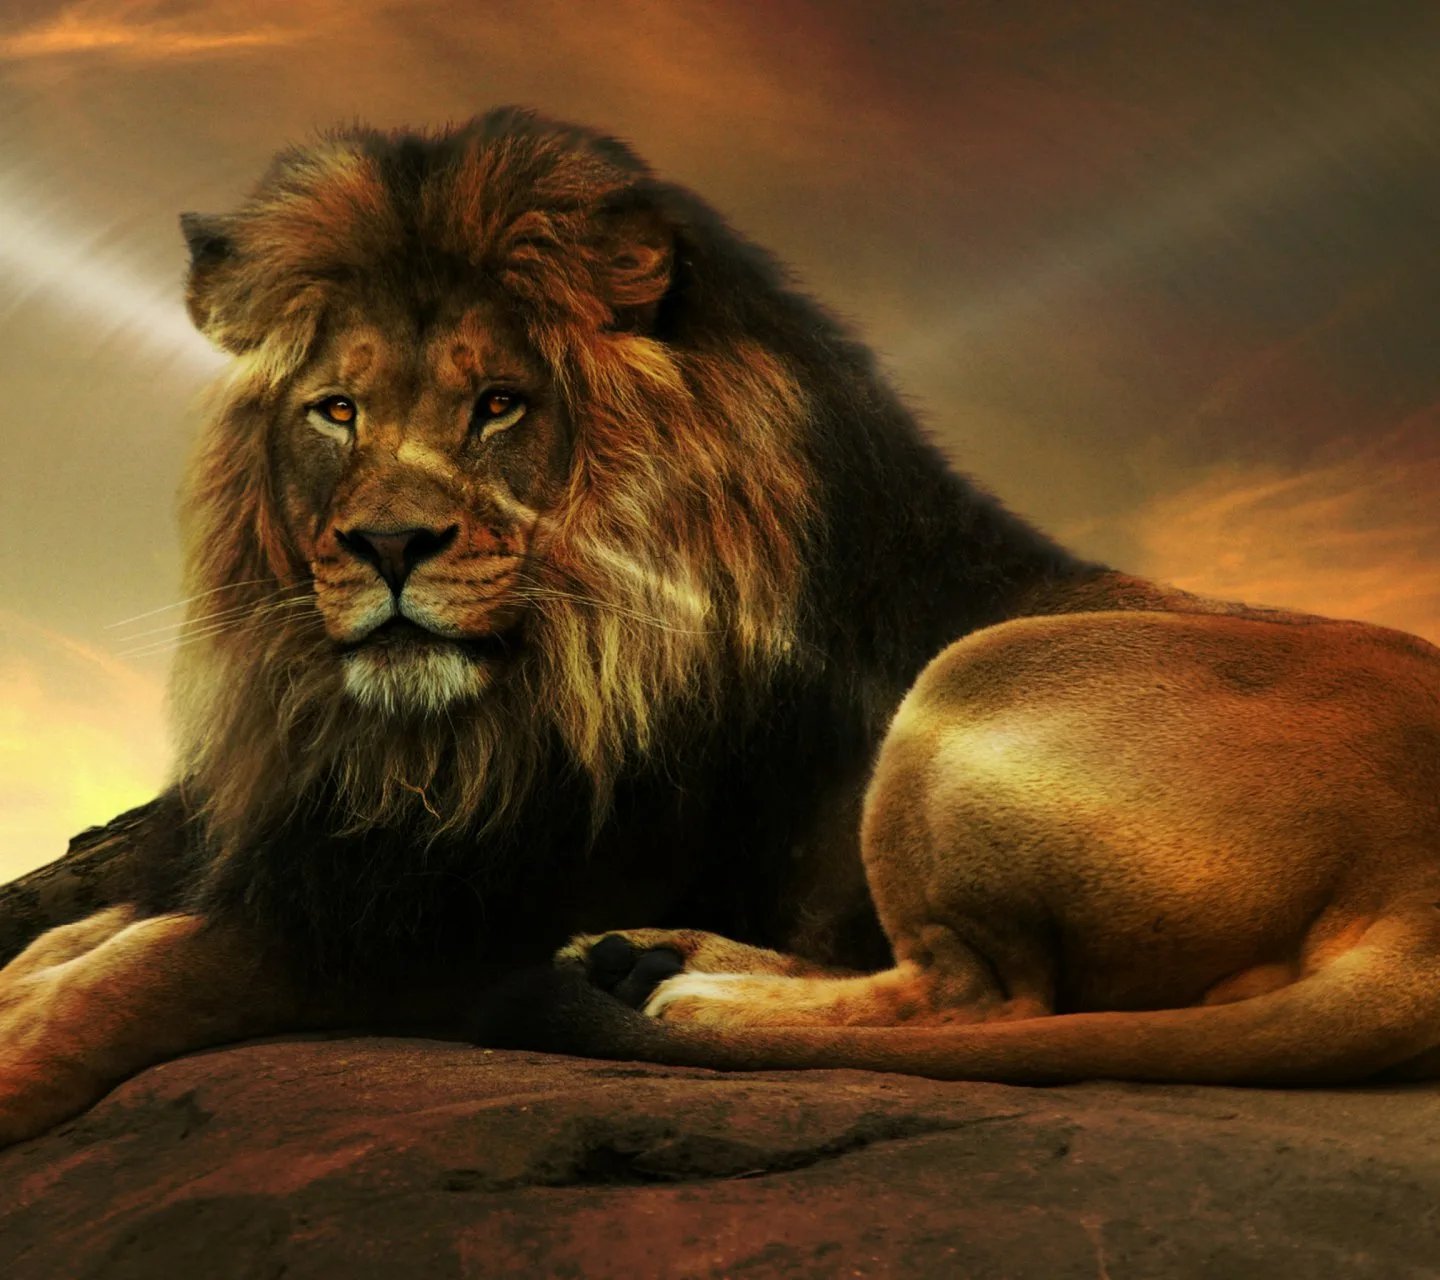 красивое фото льва на аватарку